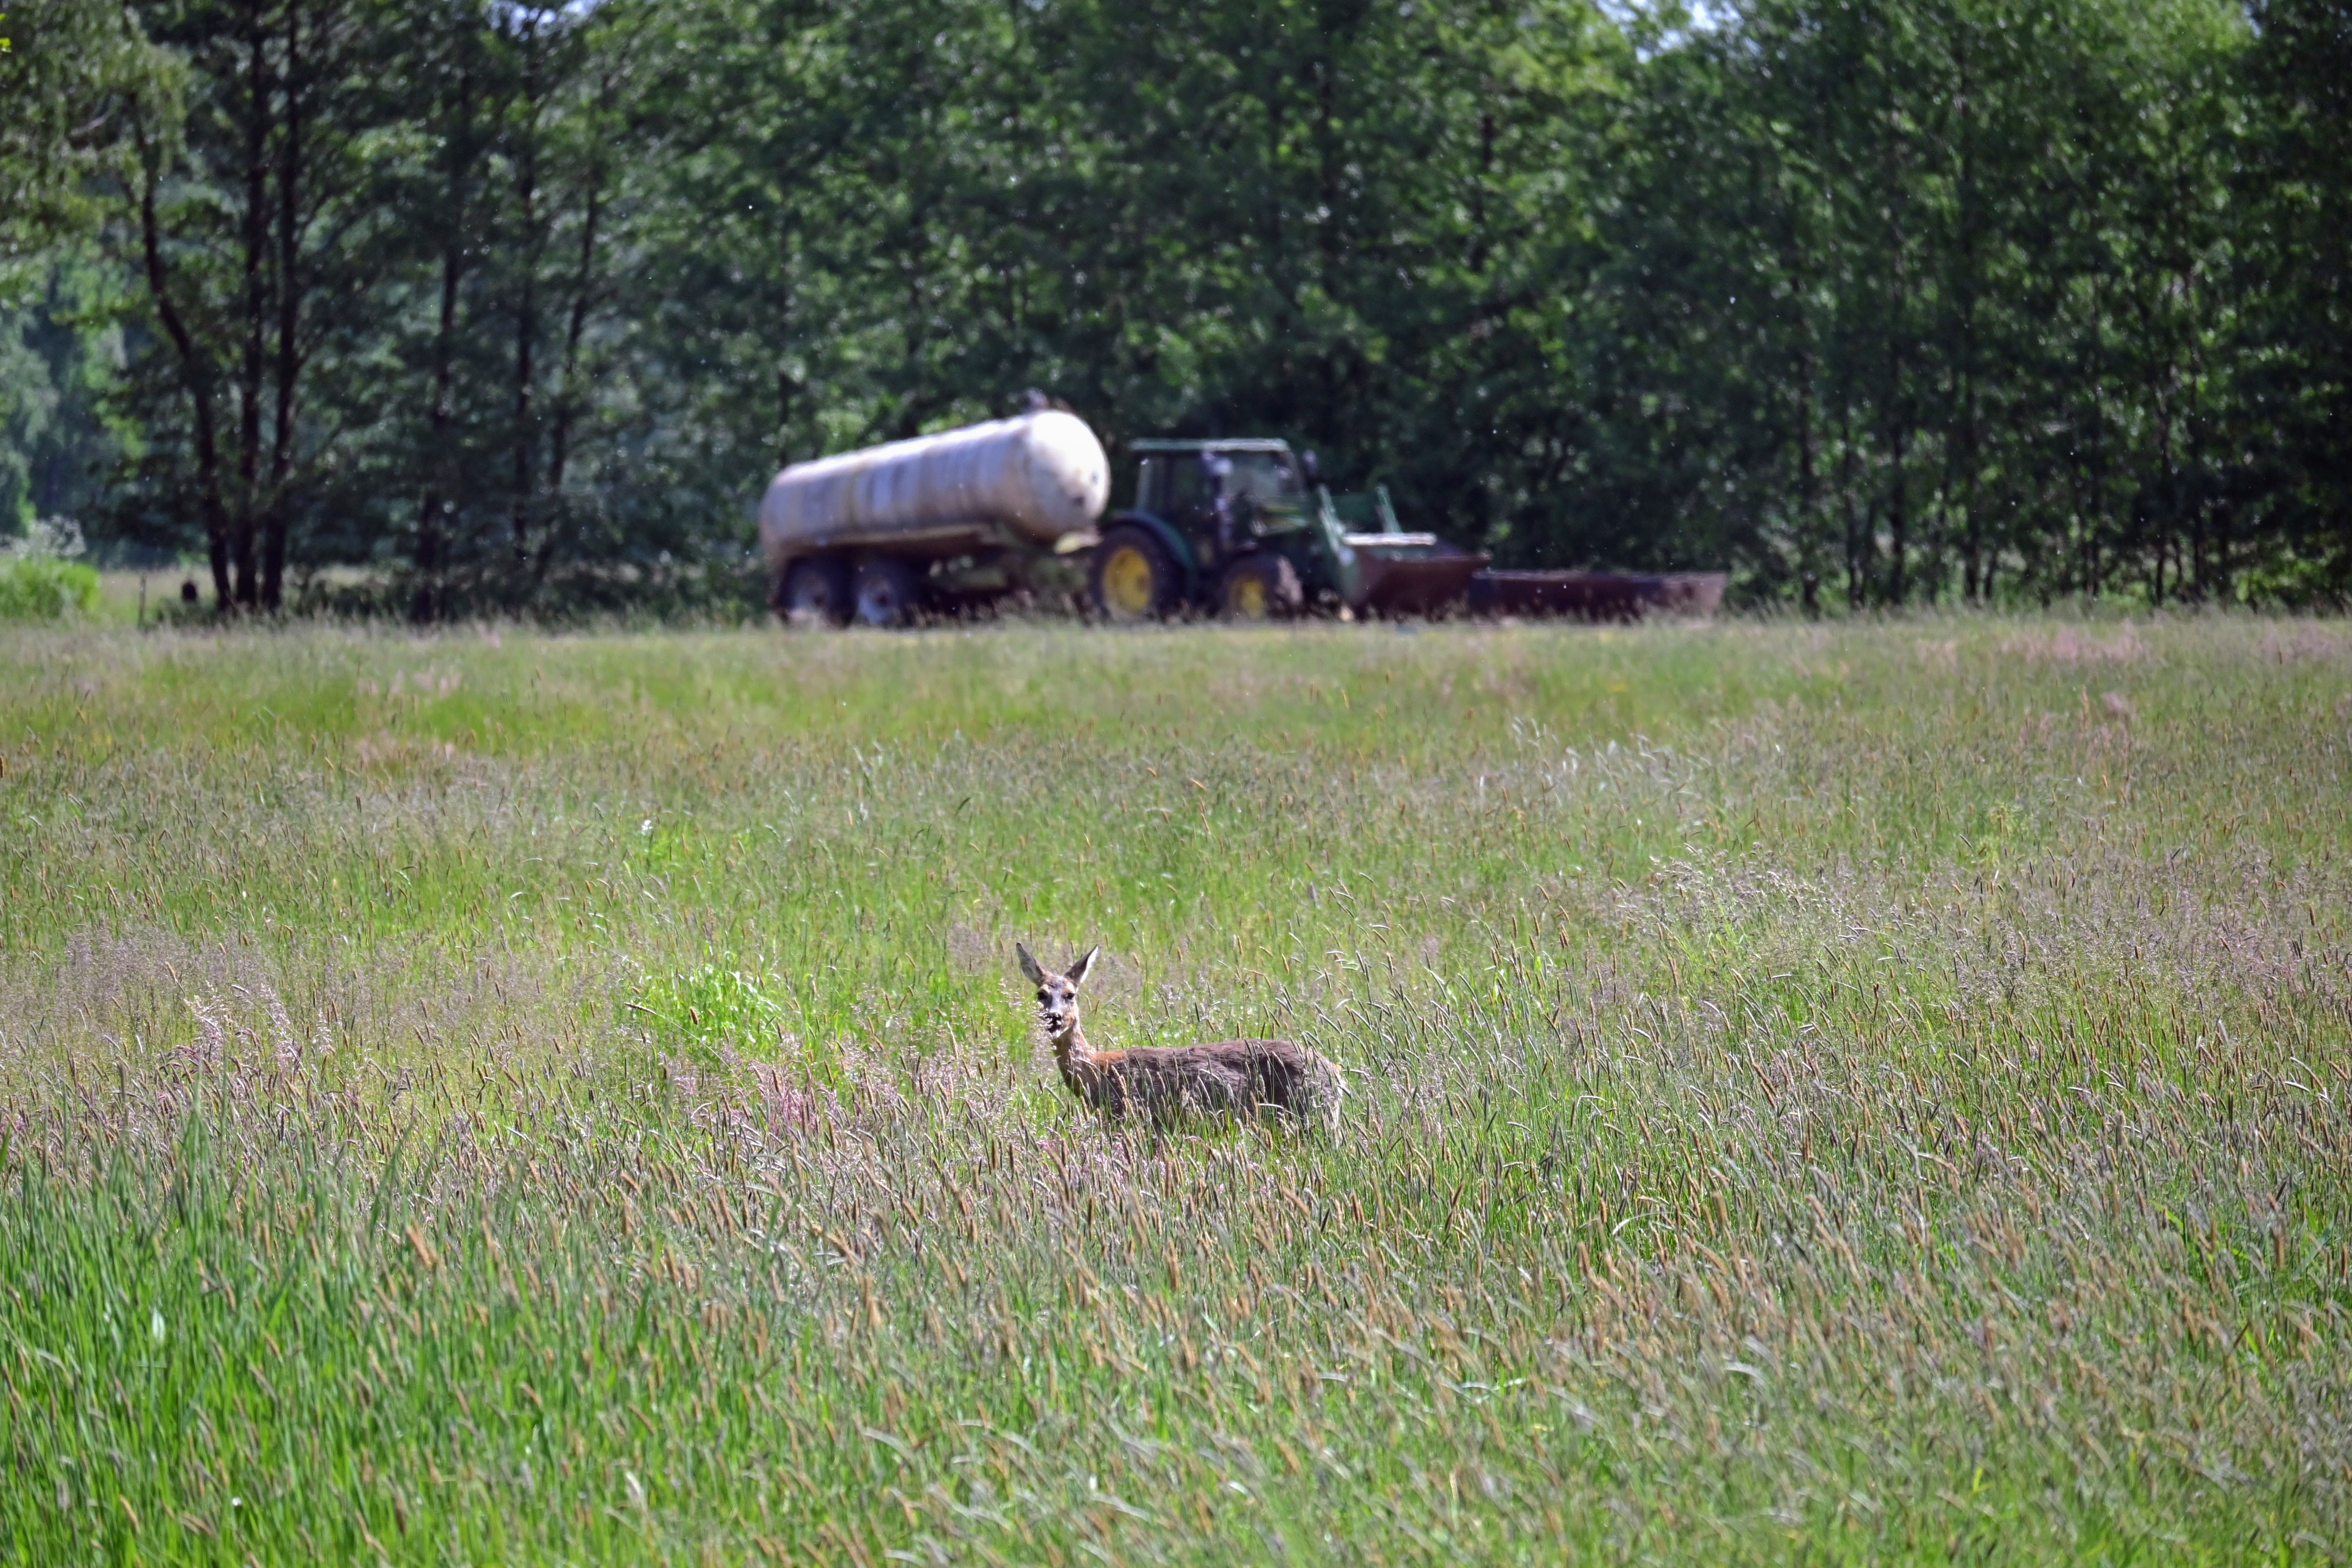 Reh zwischen Gräsern auf Weidefläche mit einem Traktor im Hintergrund.